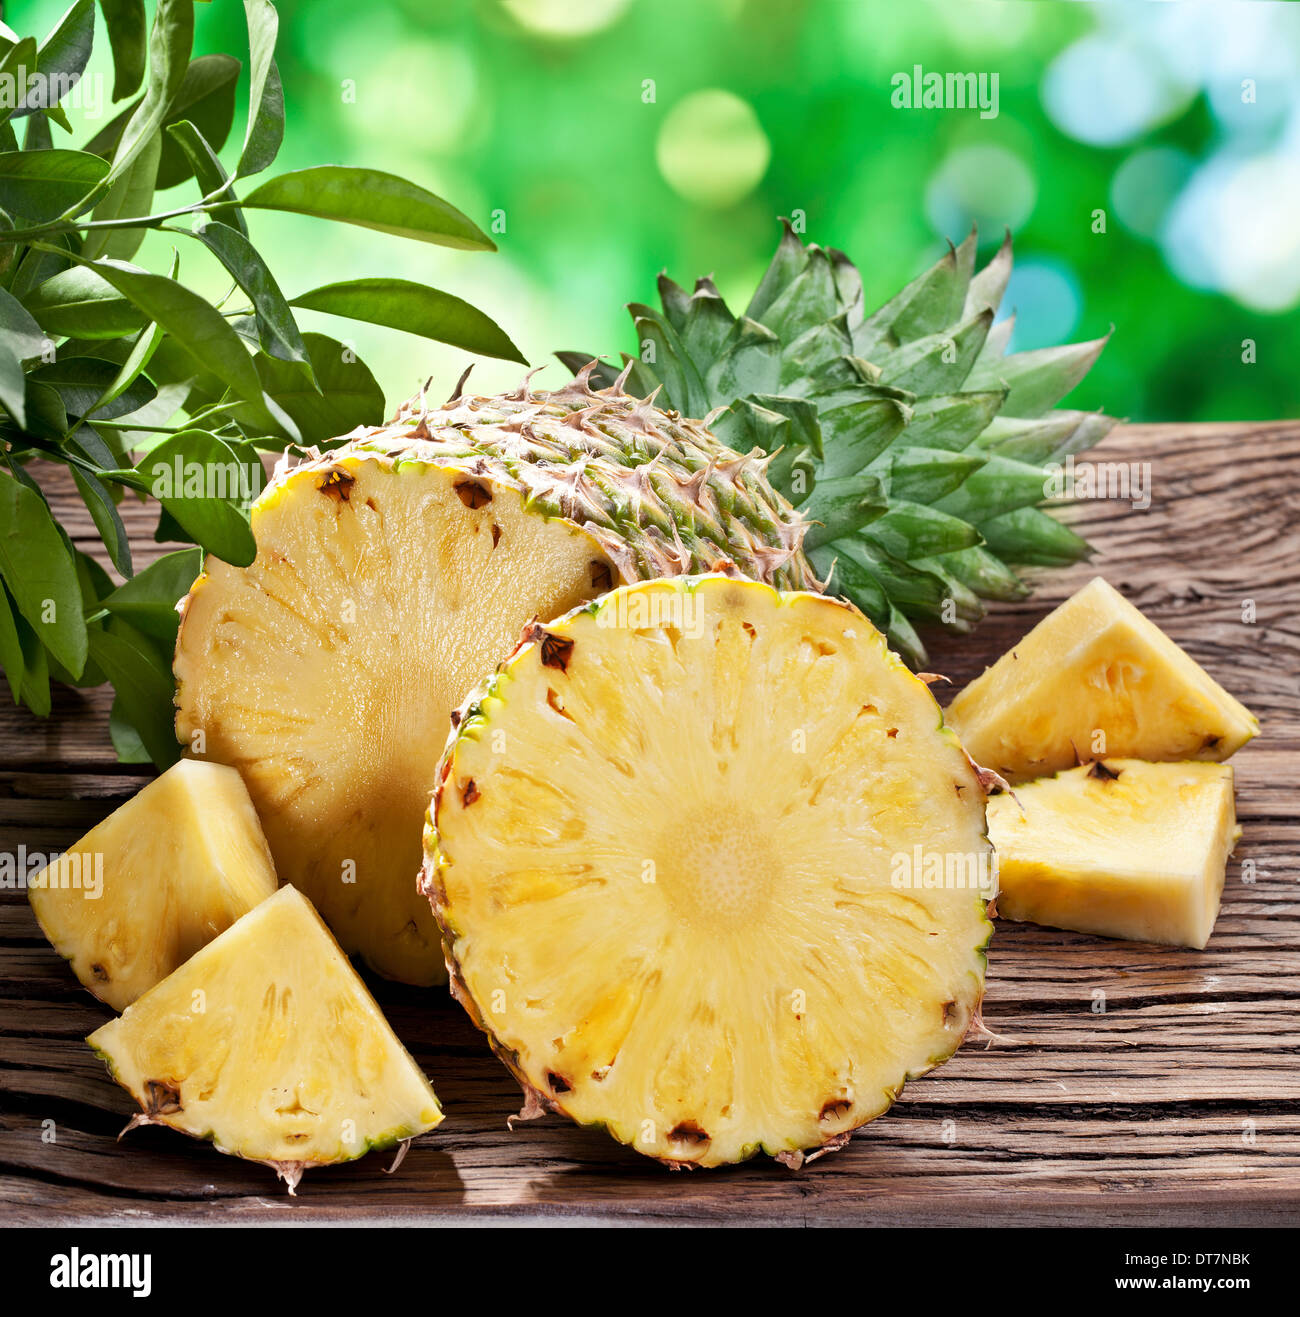 Ananas mit Scheiben auf einem Holztisch mit dunkelgrünem Laub auf dem Hintergrund. Stockfoto